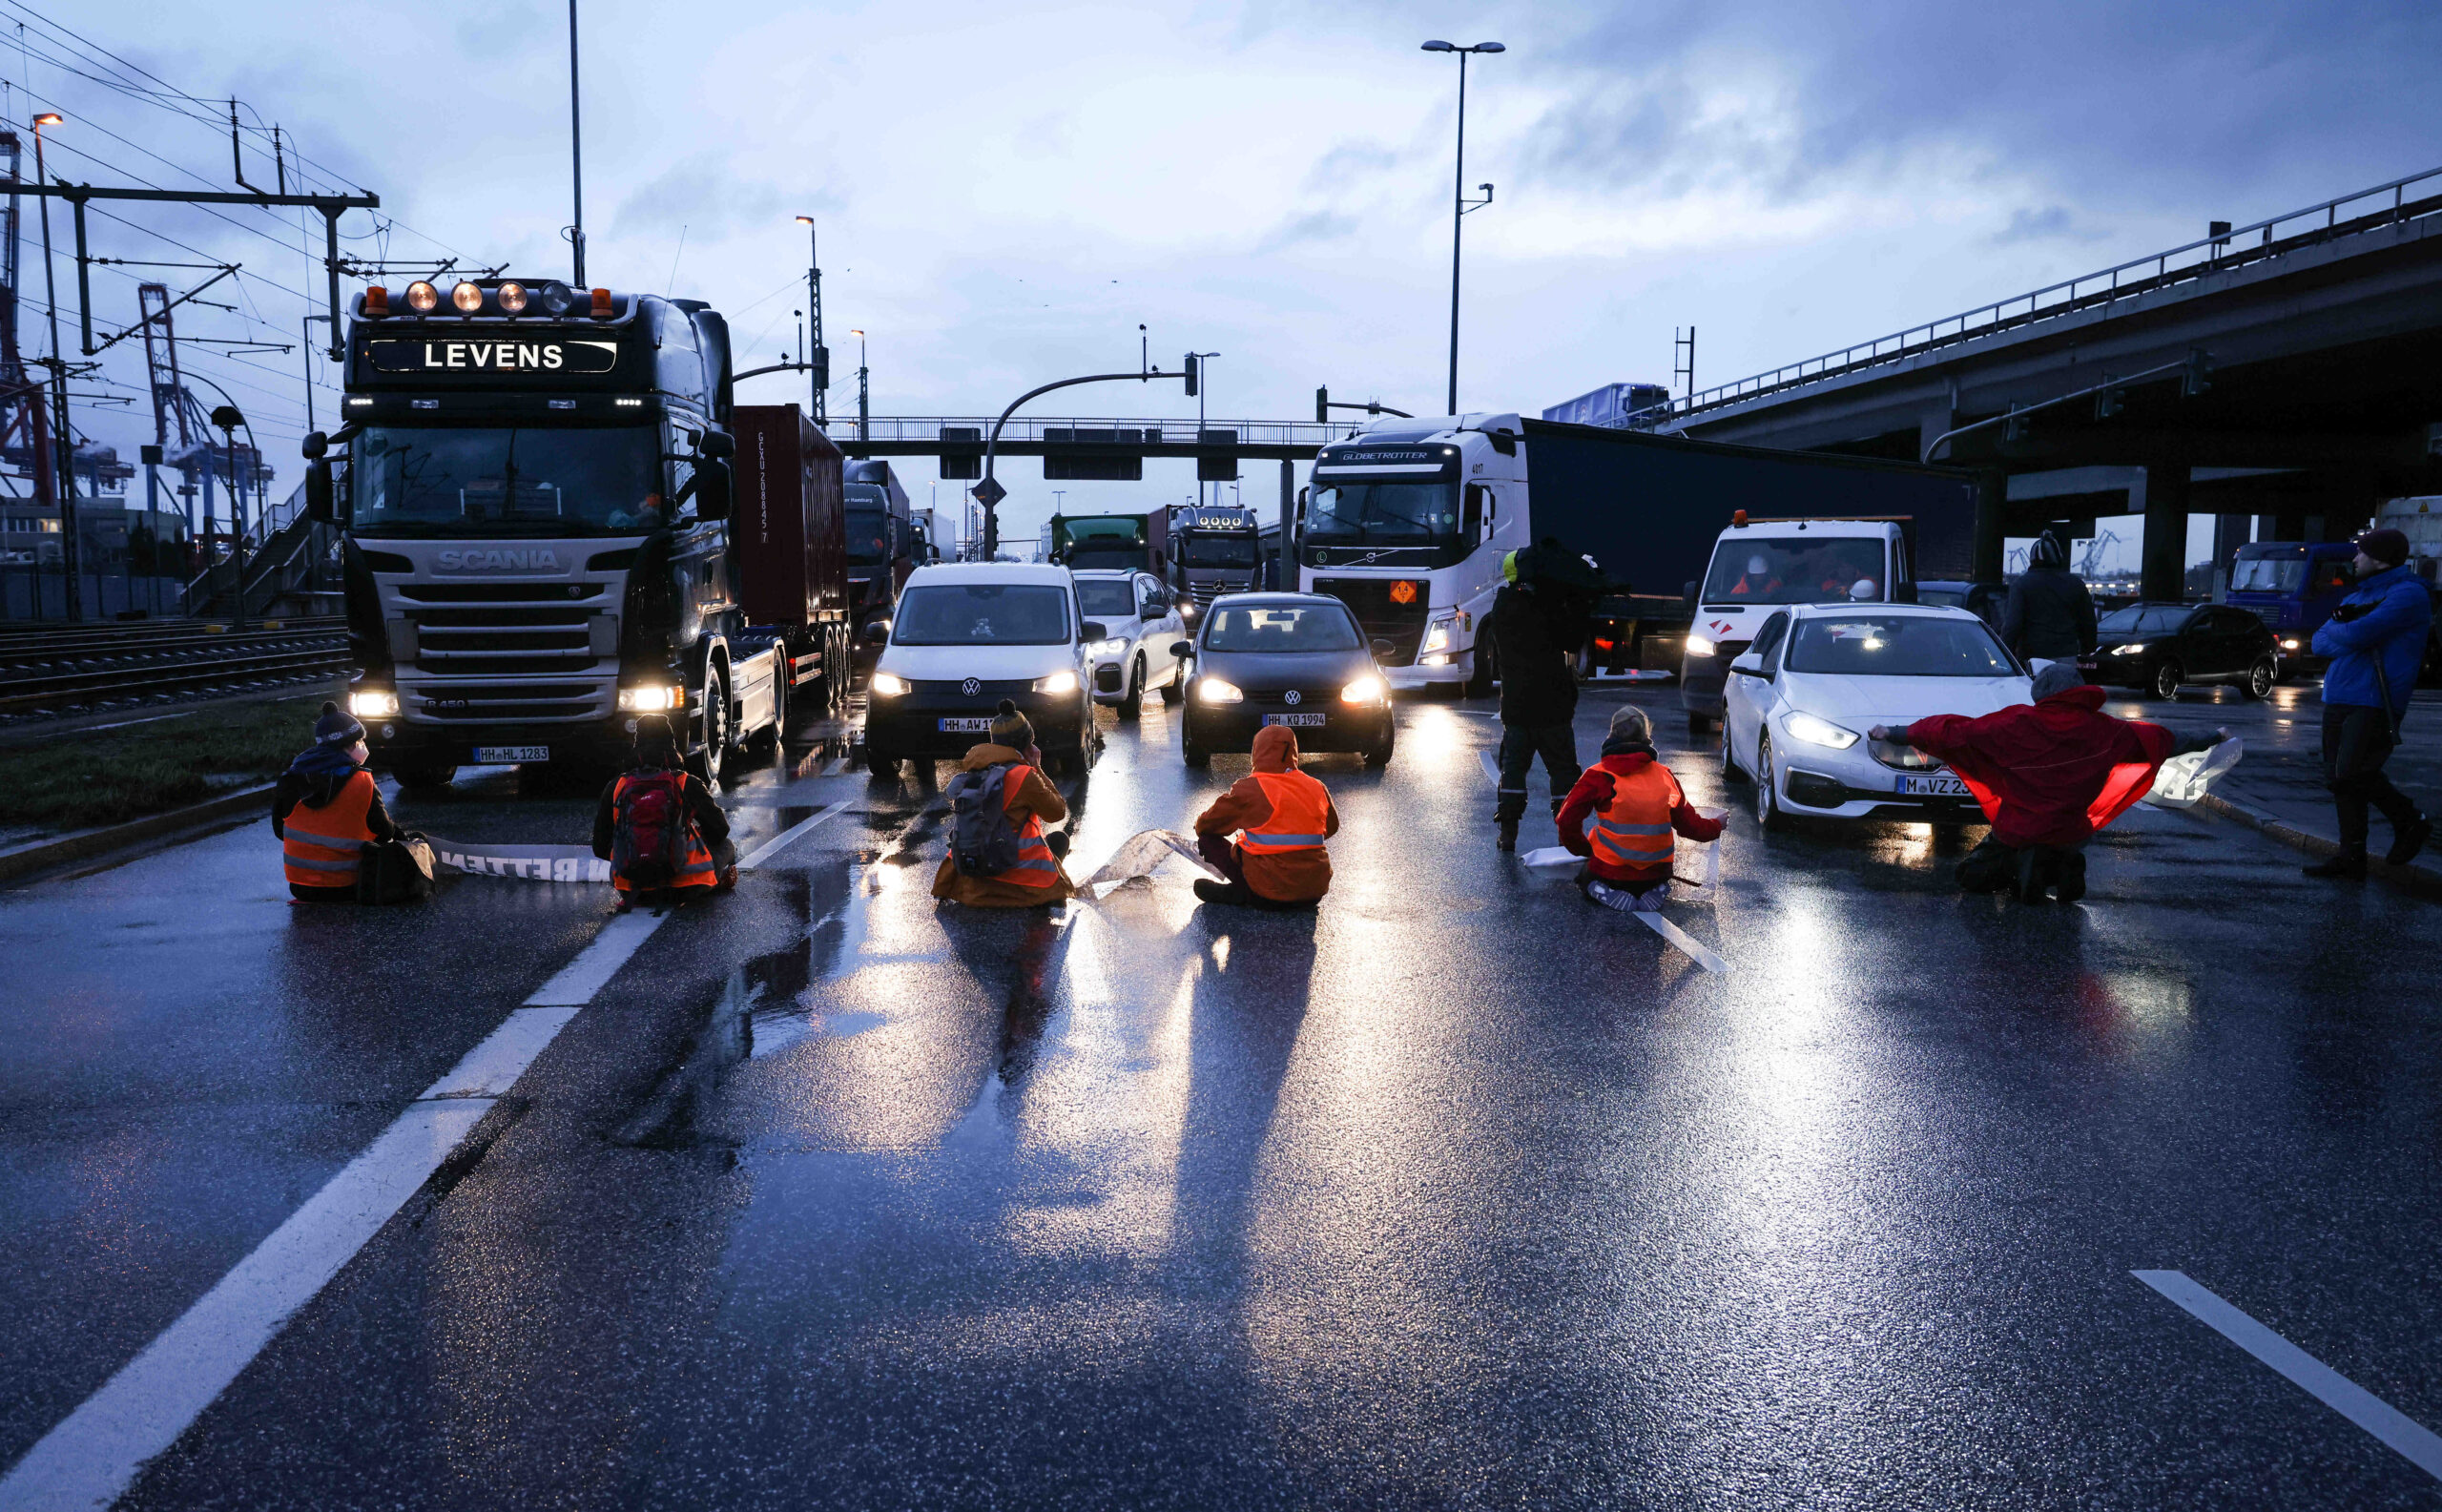 Klimaaktivisten der Aktion „Aufstand der letzten Generation“ blockieren am Morgen eine Kreuzung am Zollamt Waltershof zur Köhlbrandbrücke und zur Autobahn A7.